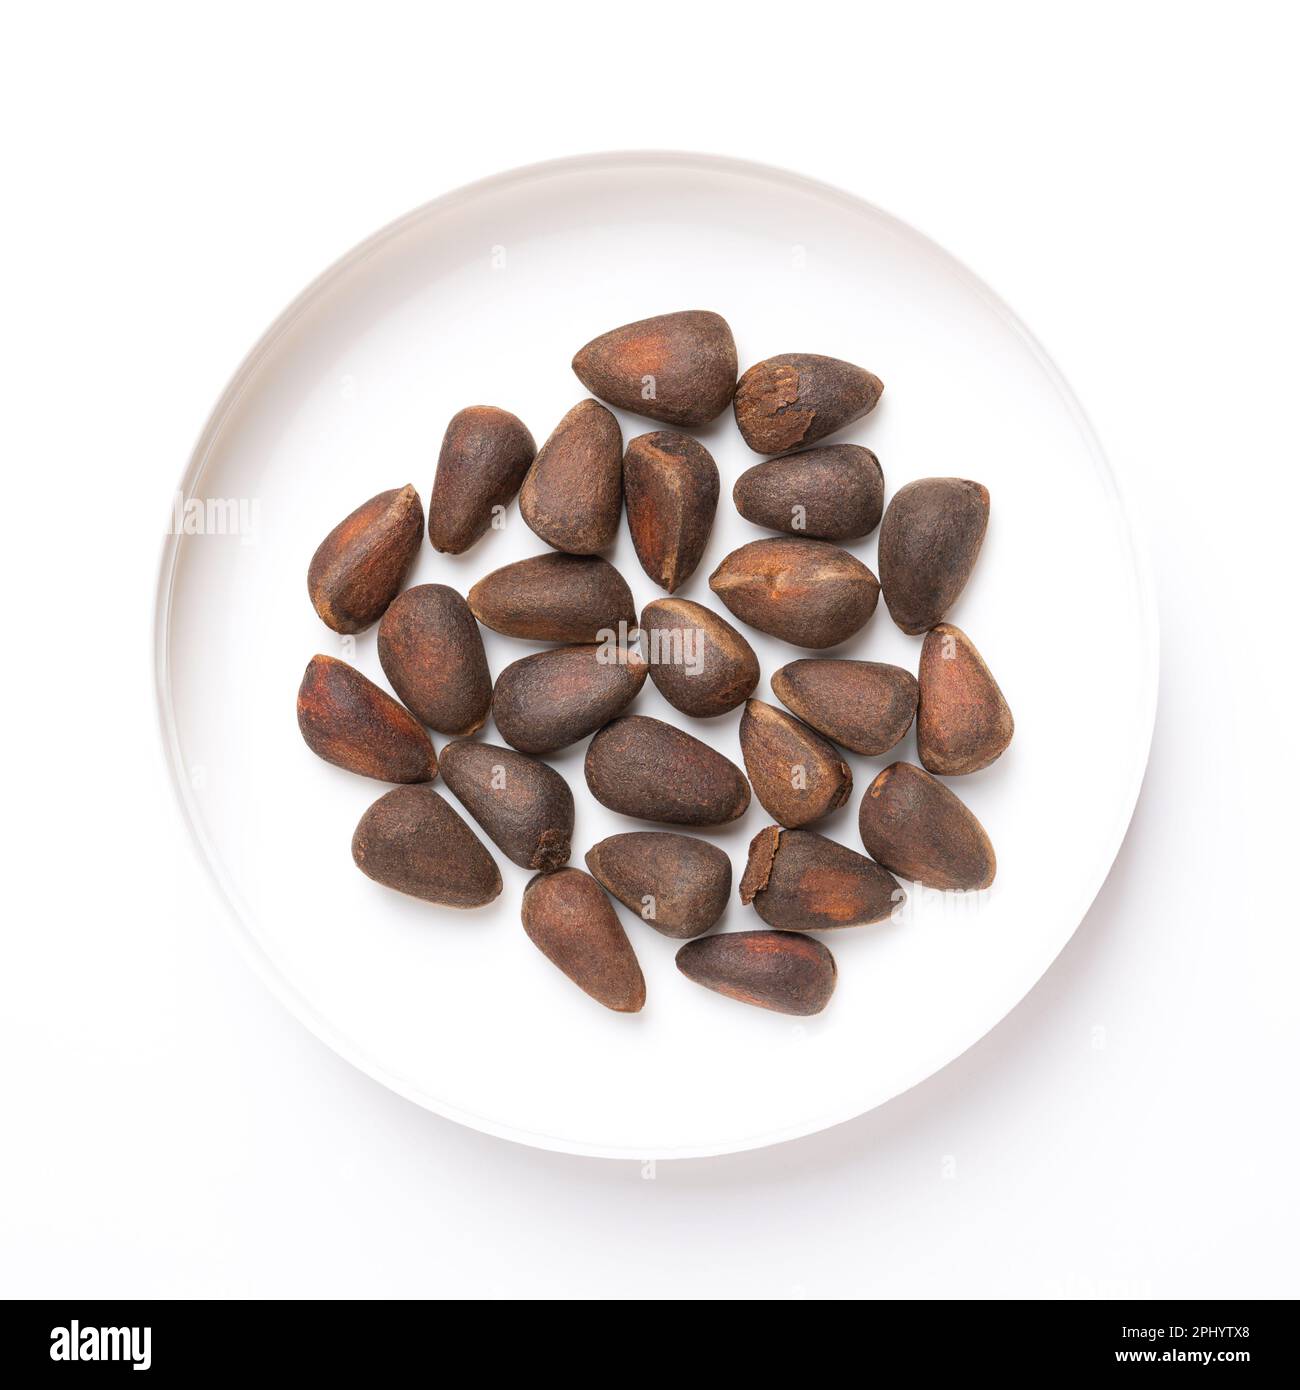 Samen einer Steinkiefer, in einem weißen Kunststoffdeckel, von oben. Nüsse aus einem Kegel von Pinus cembra, auch bekannt als Schweizer, Arolla oder österreichische Steinkiefer. Stockfoto